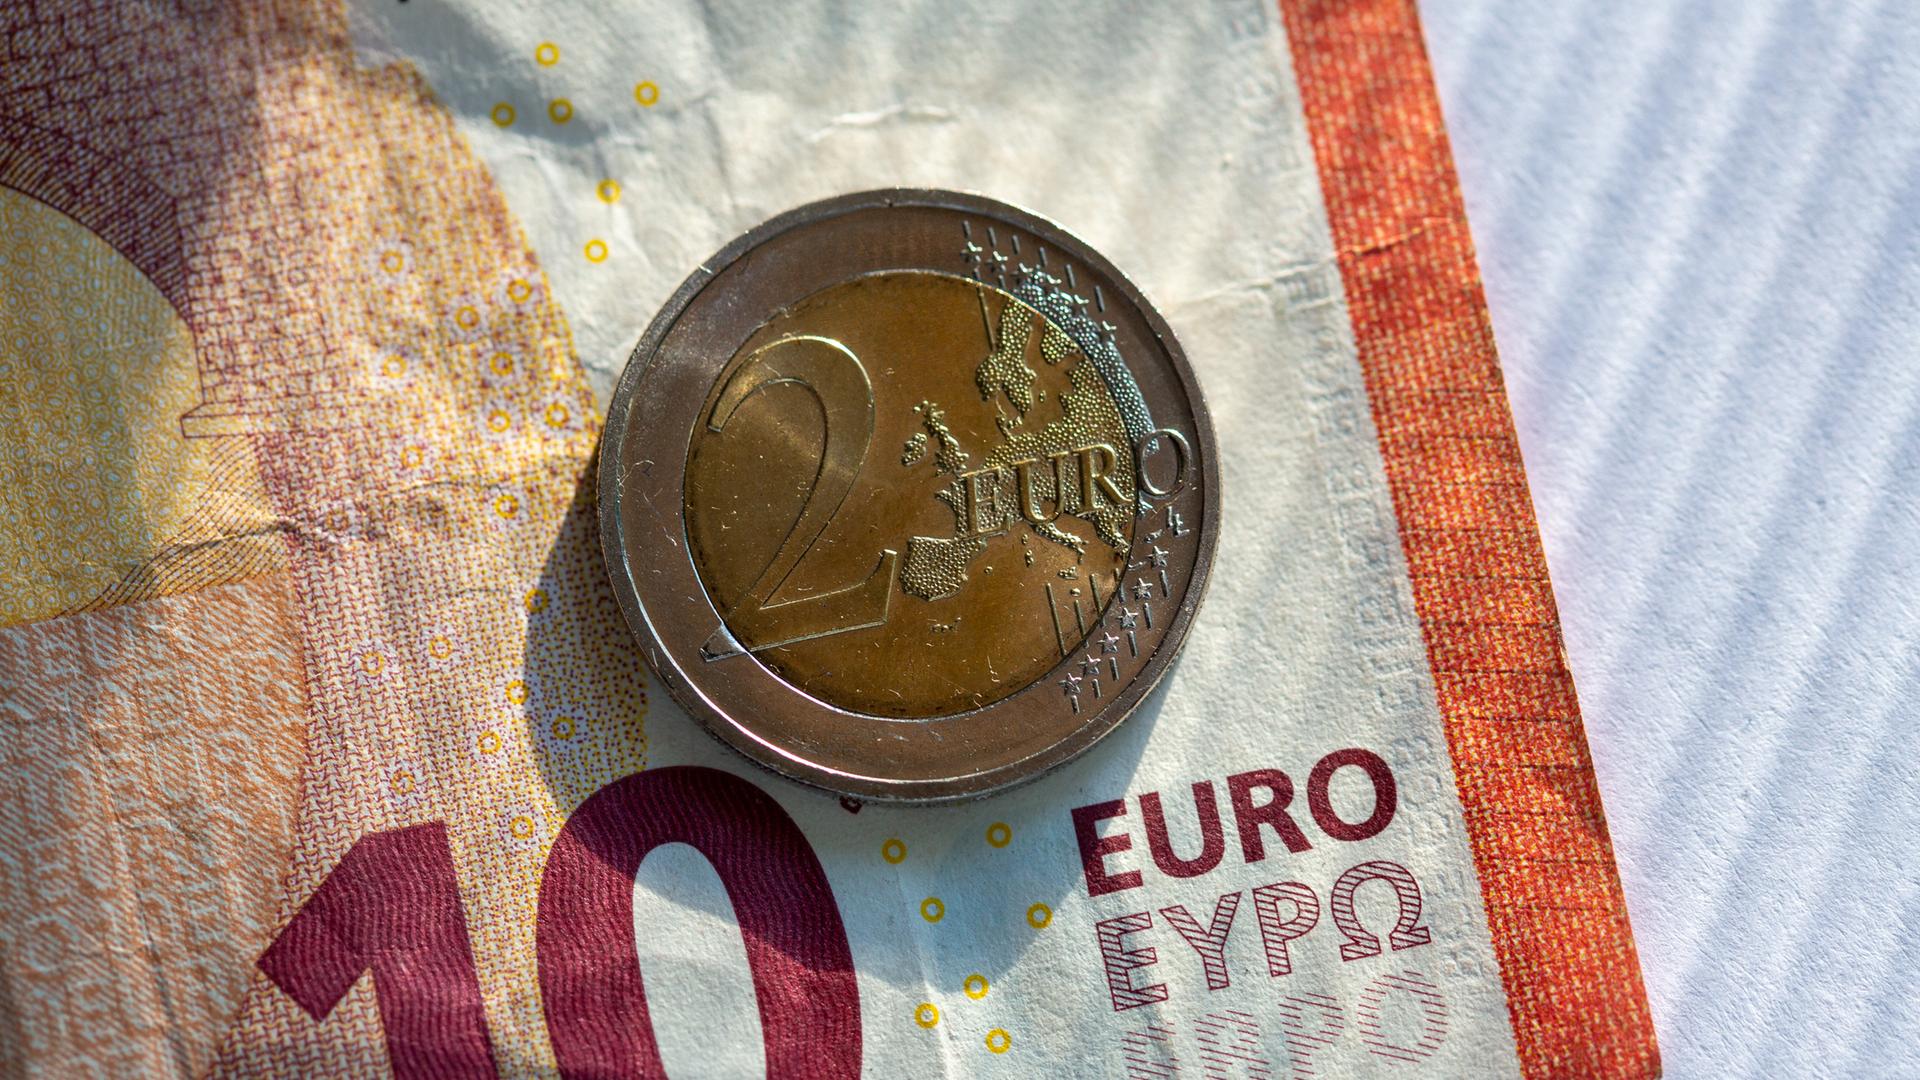 Mindestlohn - Von heute an müssen 12 Euro gezahlt werden